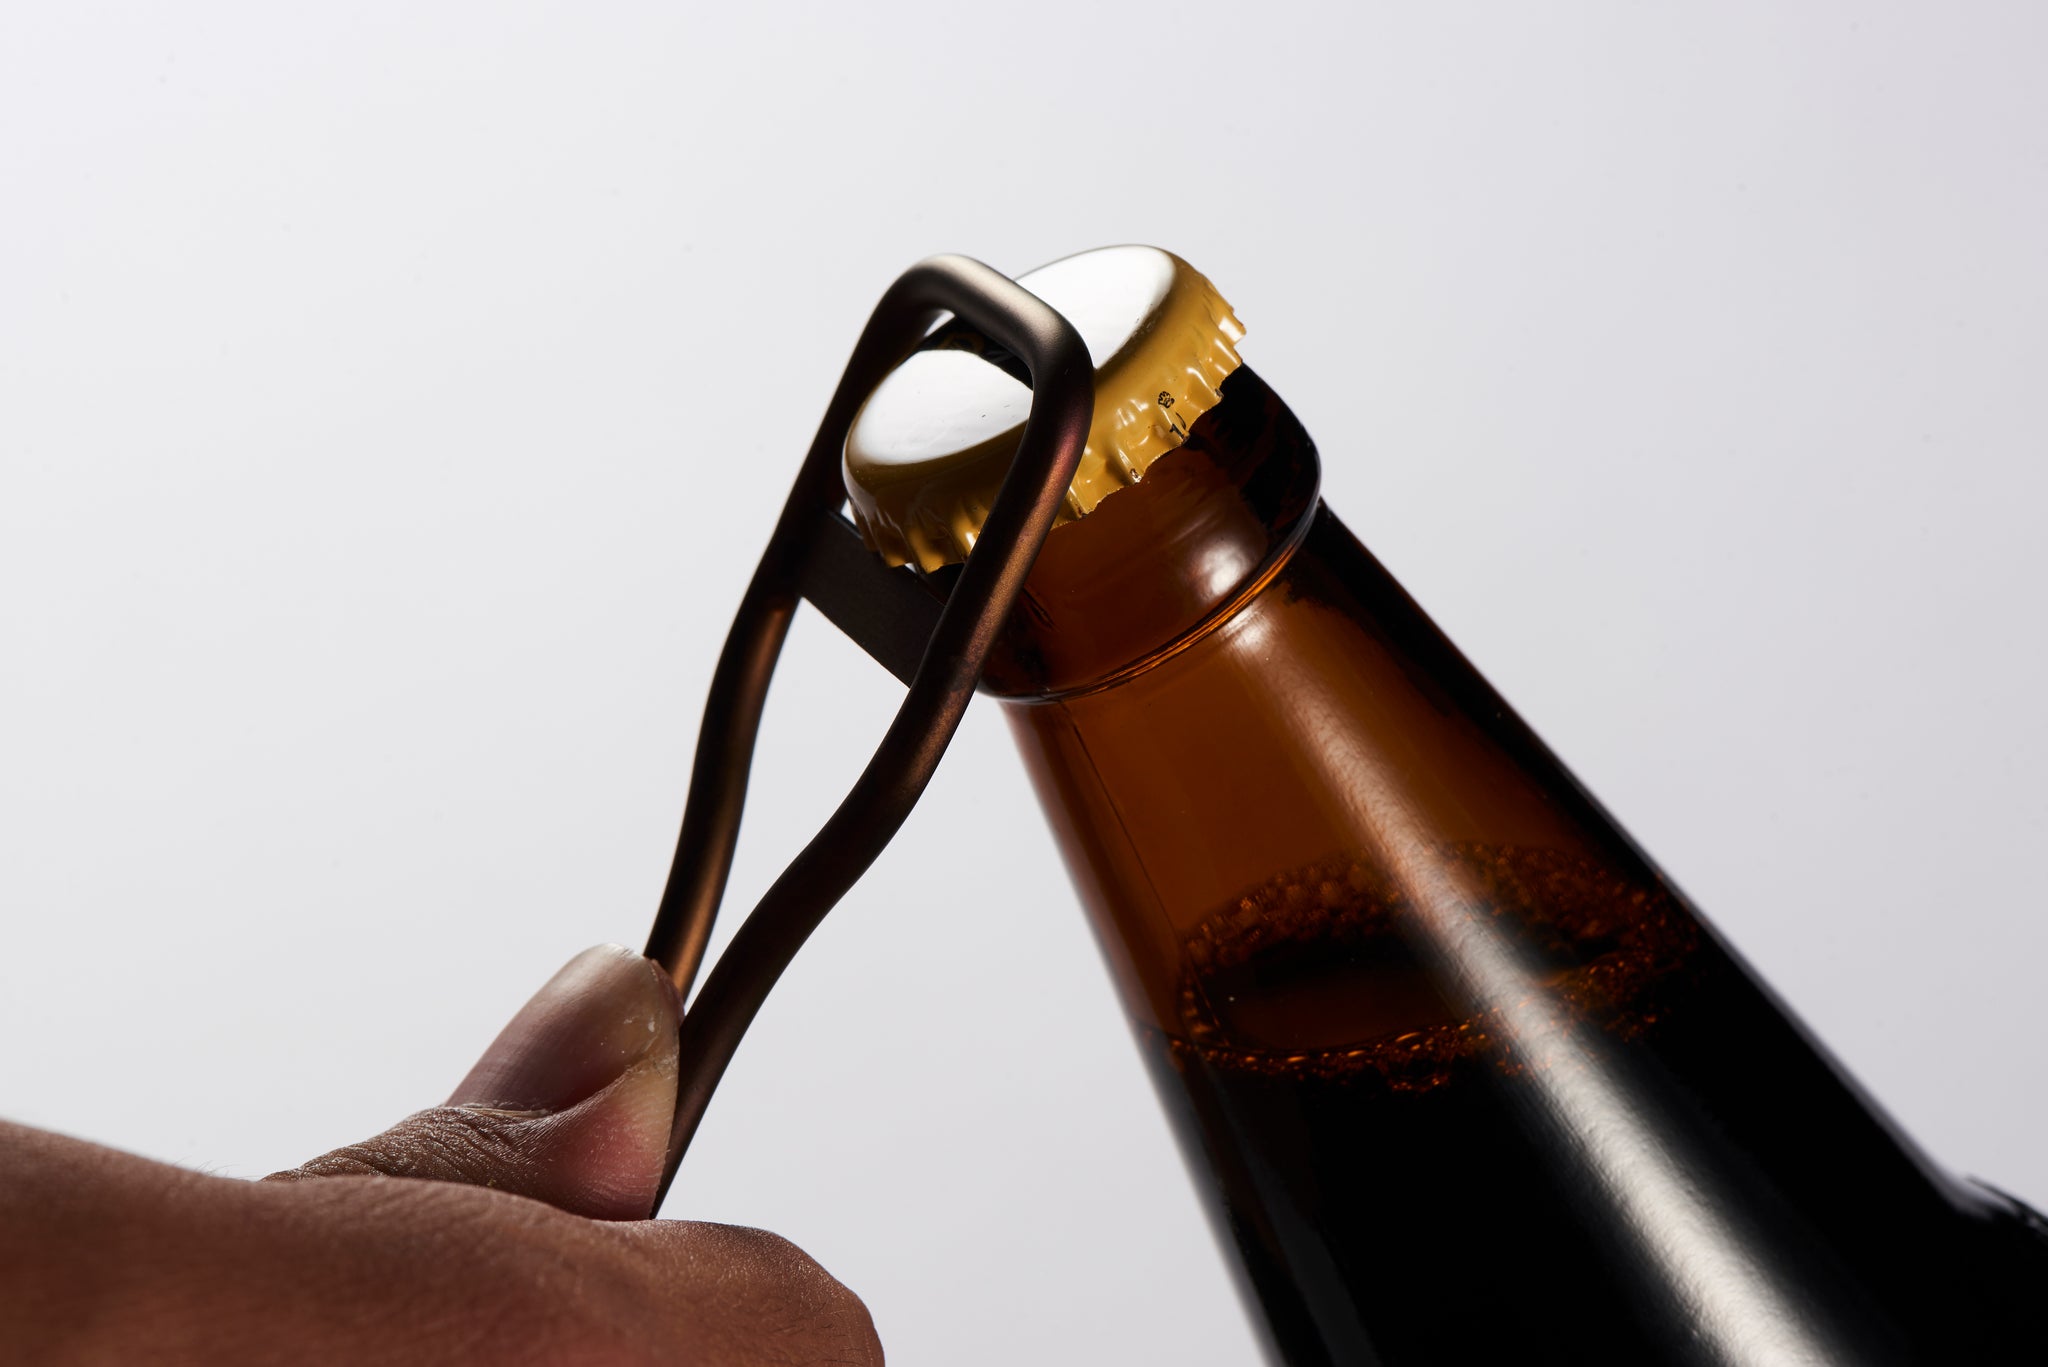 Stainless Steel Bottle Opener